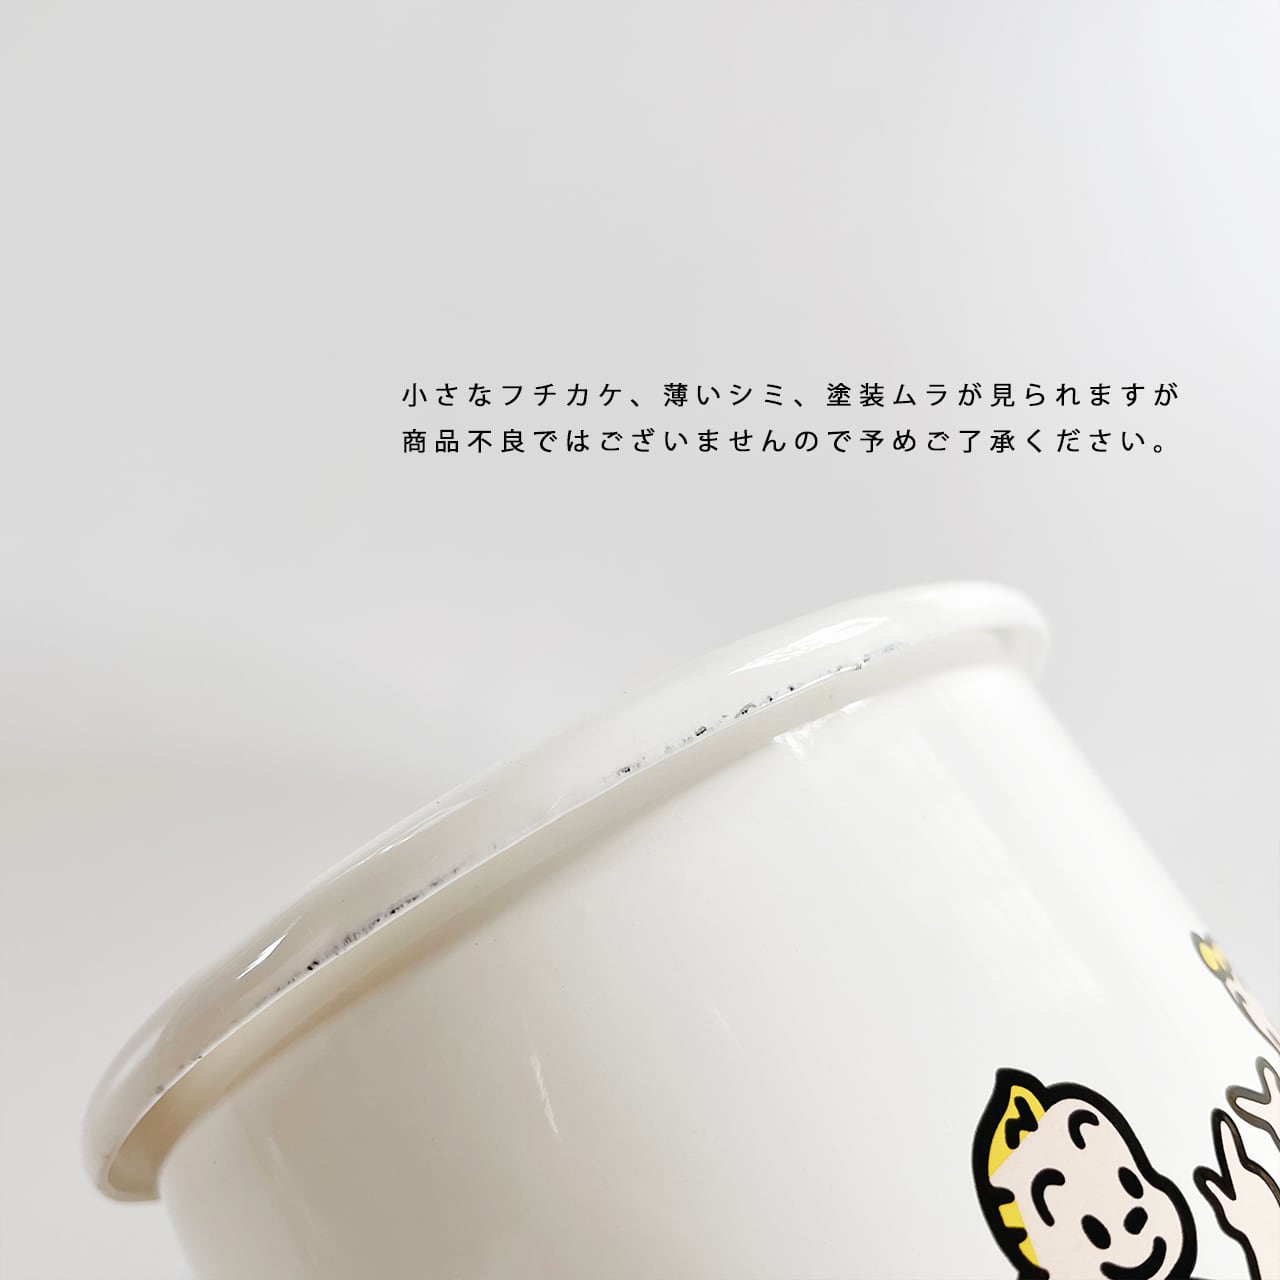 【OSAMU GOODS】Hōrō canister